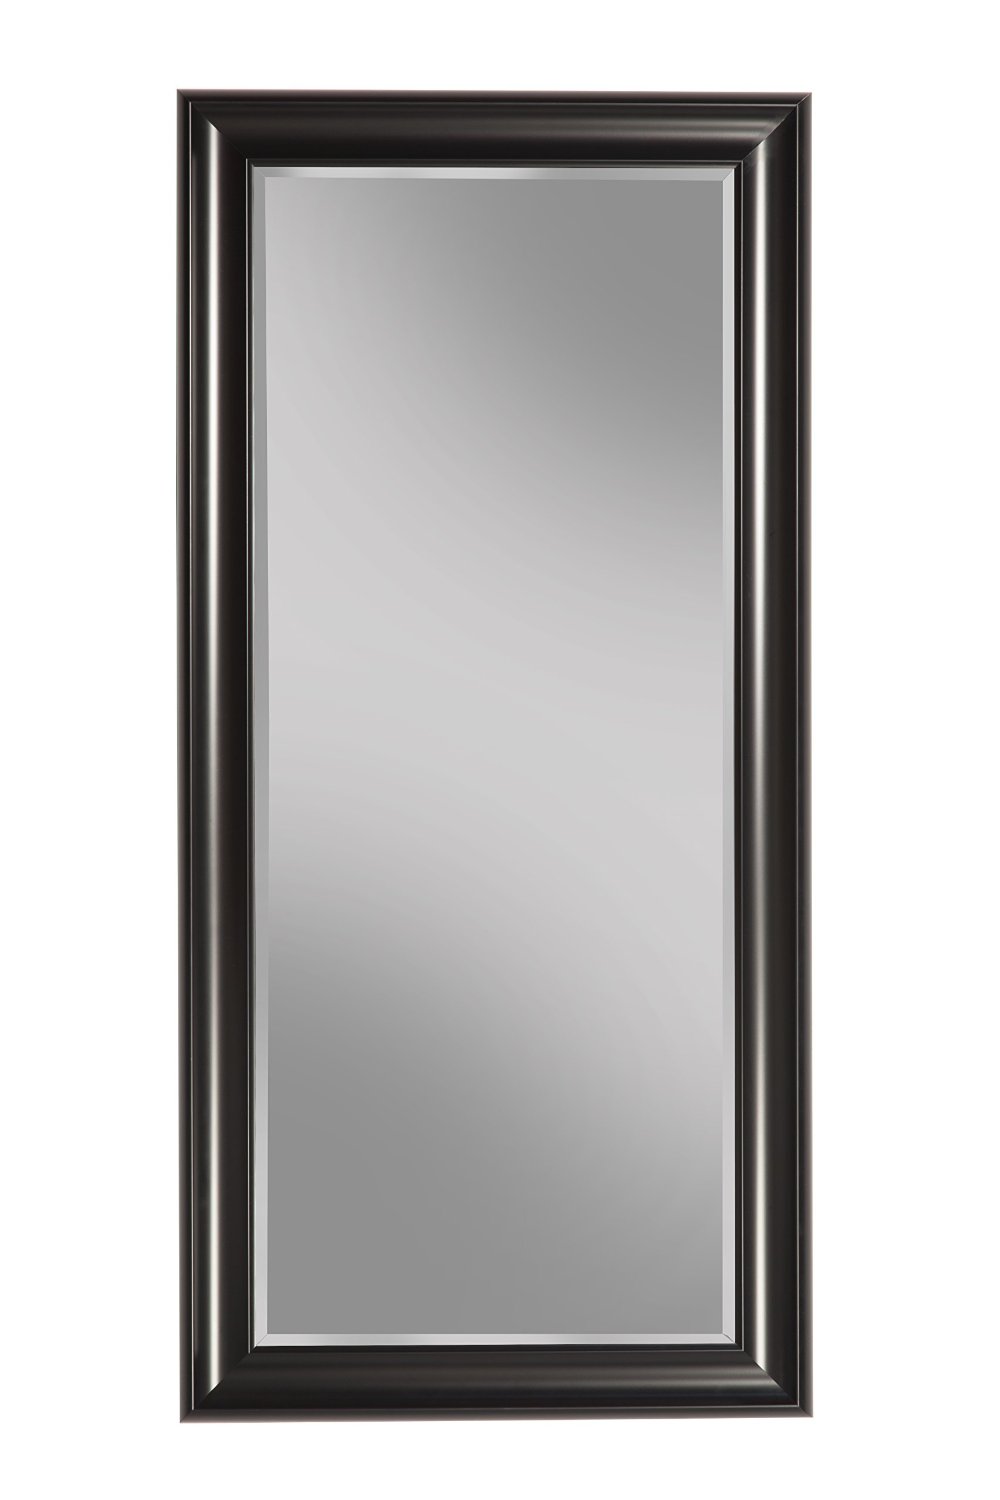 Sandberg Furniture Black Full Length Leaner Mirror